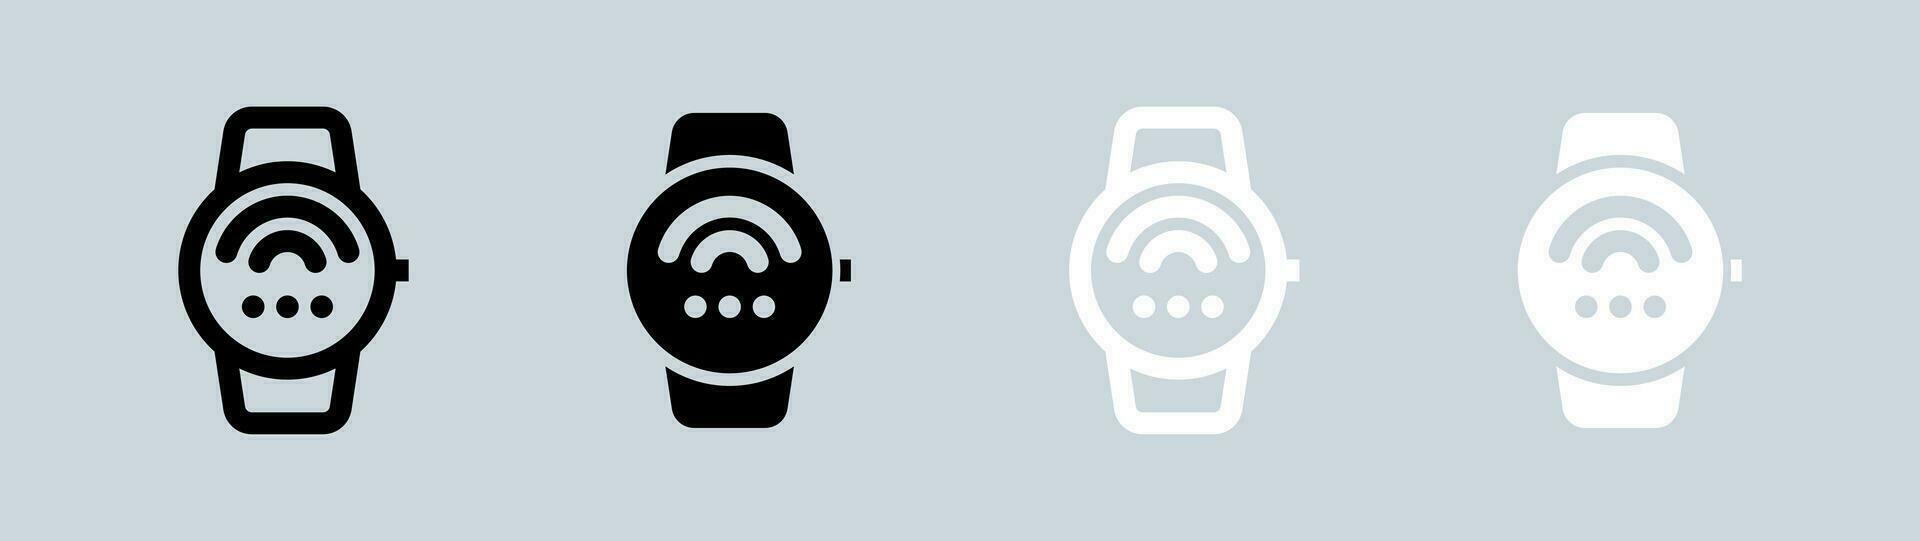 relier montre intelligente icône ensemble dans noir et blanche. intelligent dispositif panneaux vecteur illustration.